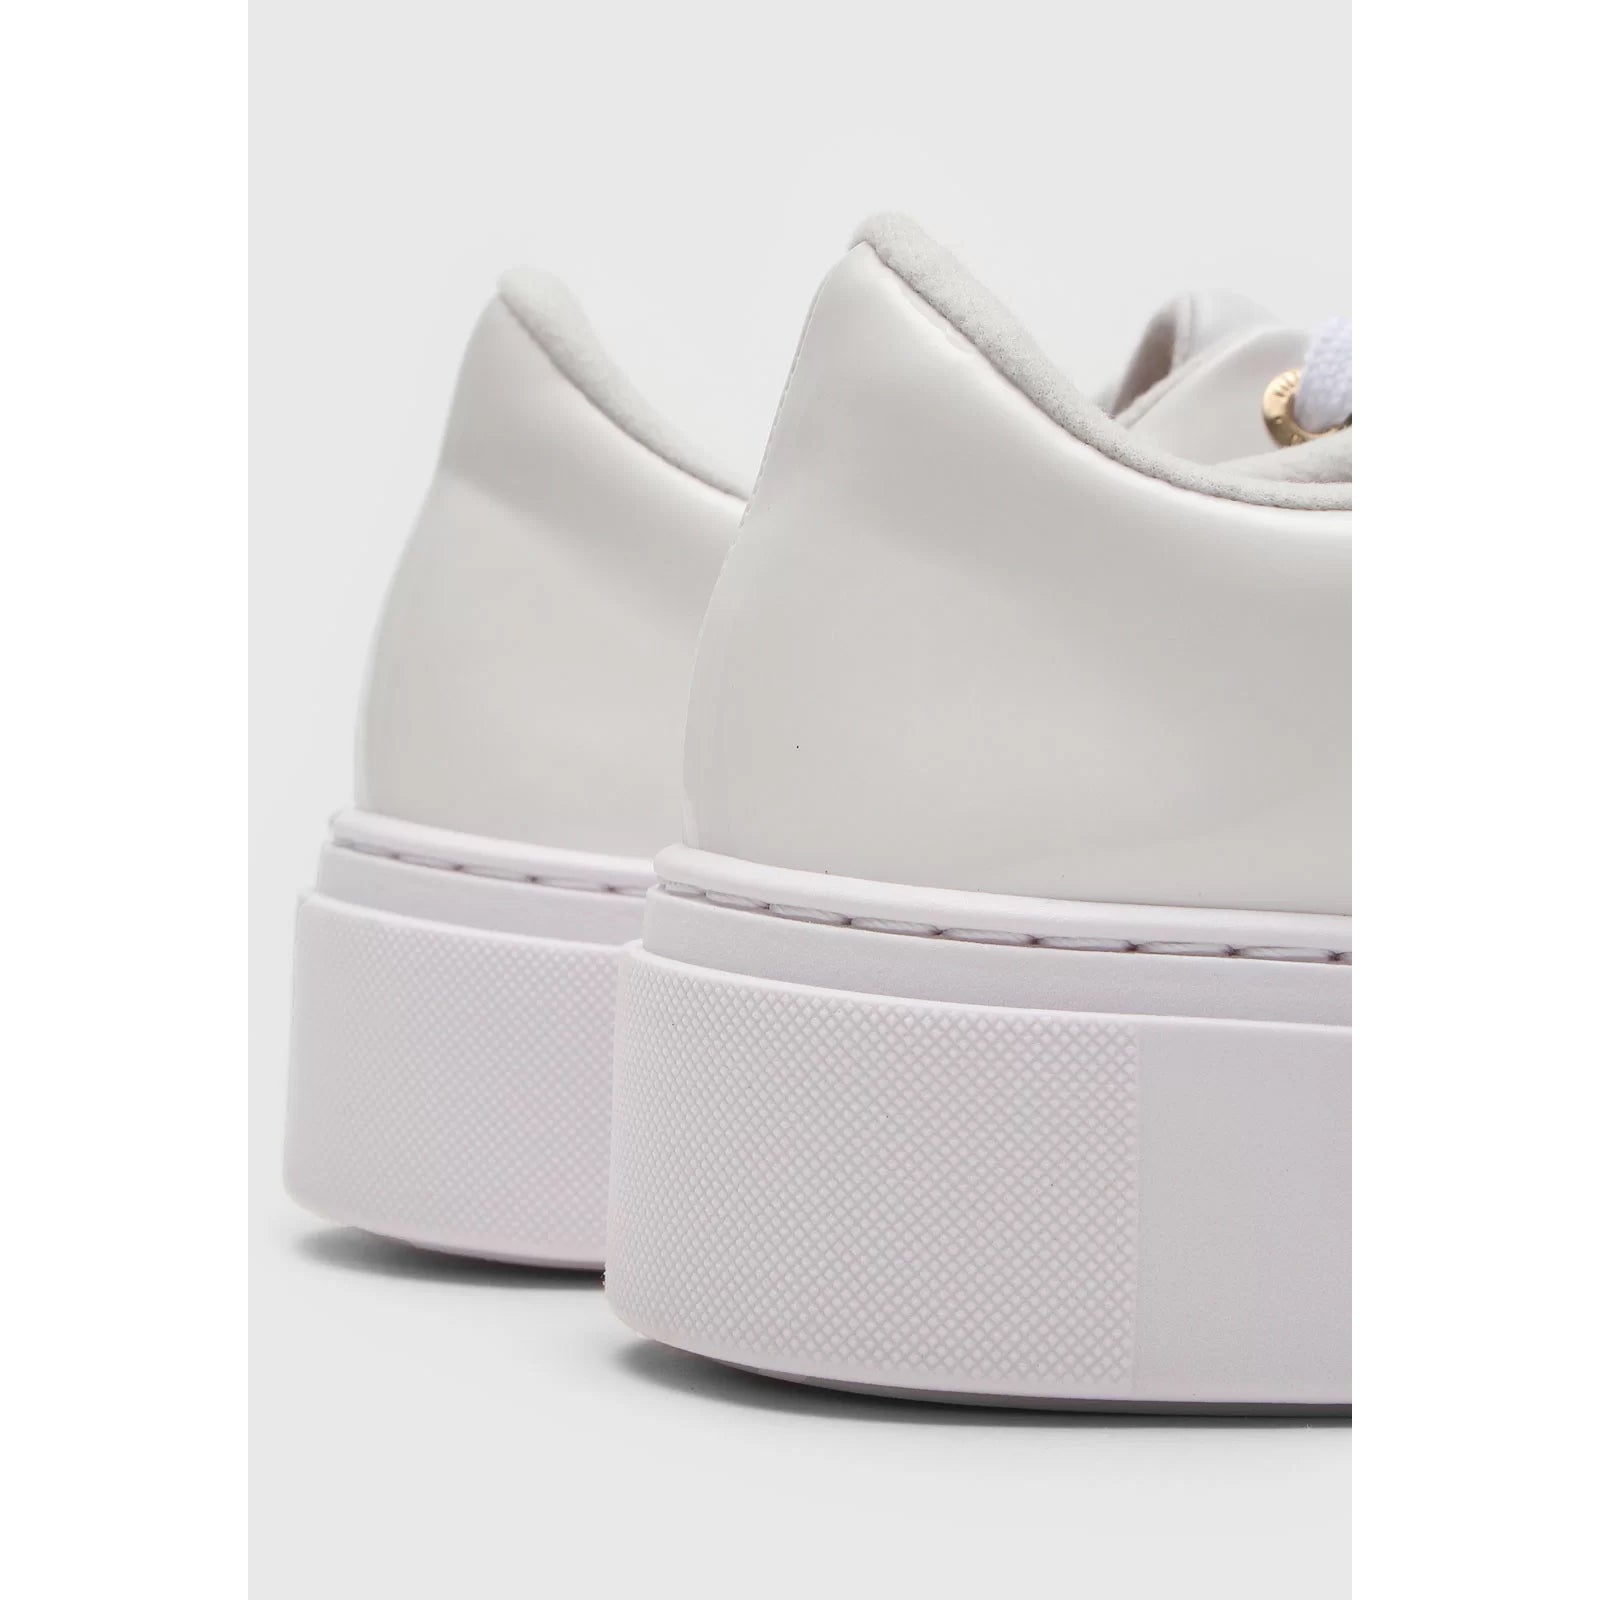 Vizzano 1339-101 White Sole Sneaker in White Napa